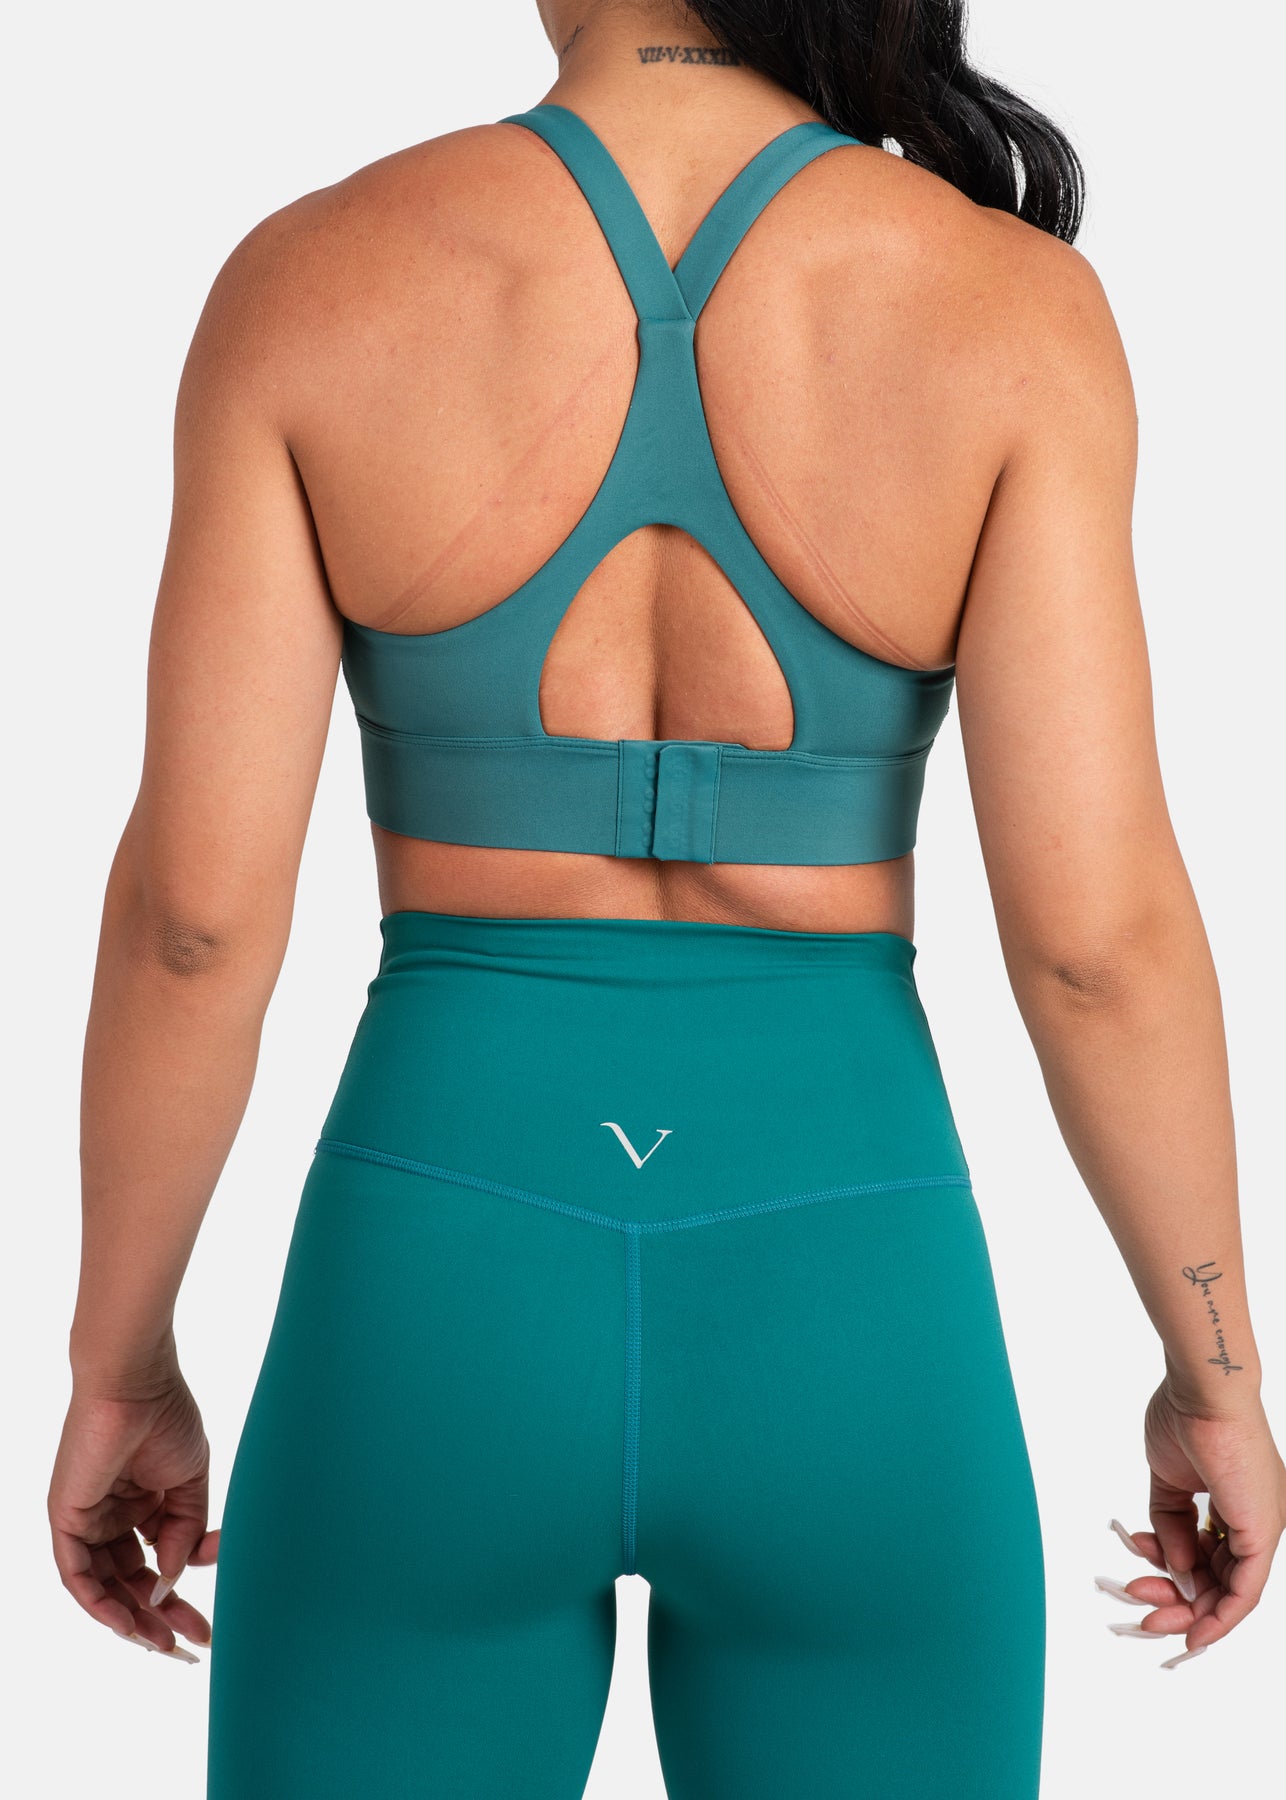 SALE! Emerald Green Kelly Long Line Sleek Padded Sports Bra - Women -  ShopperBoard